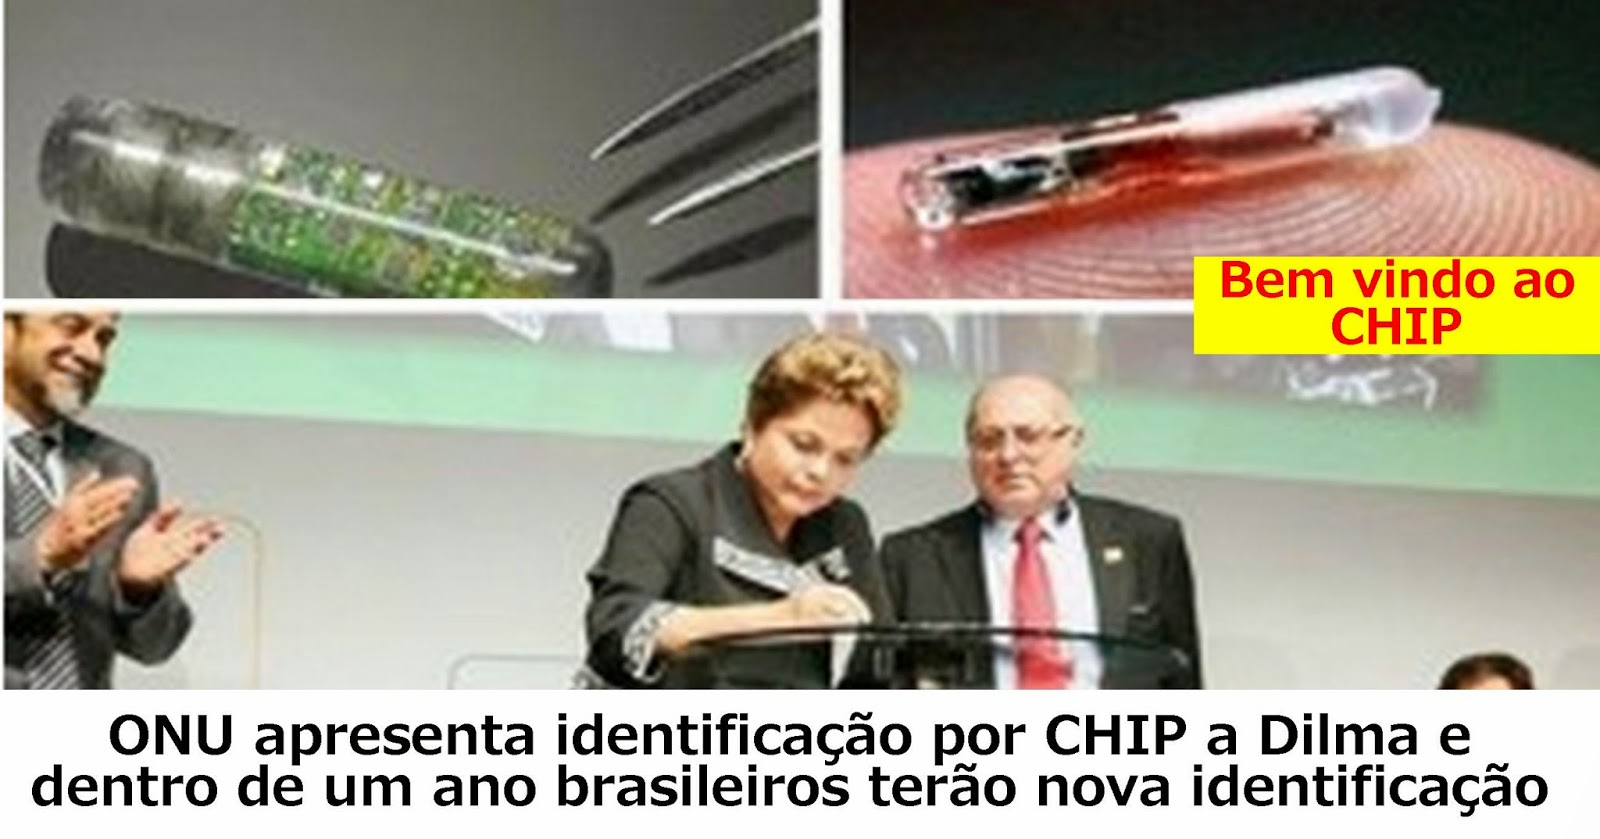 Dilma aprova a implantação de chip nos brasileiros em 2015!